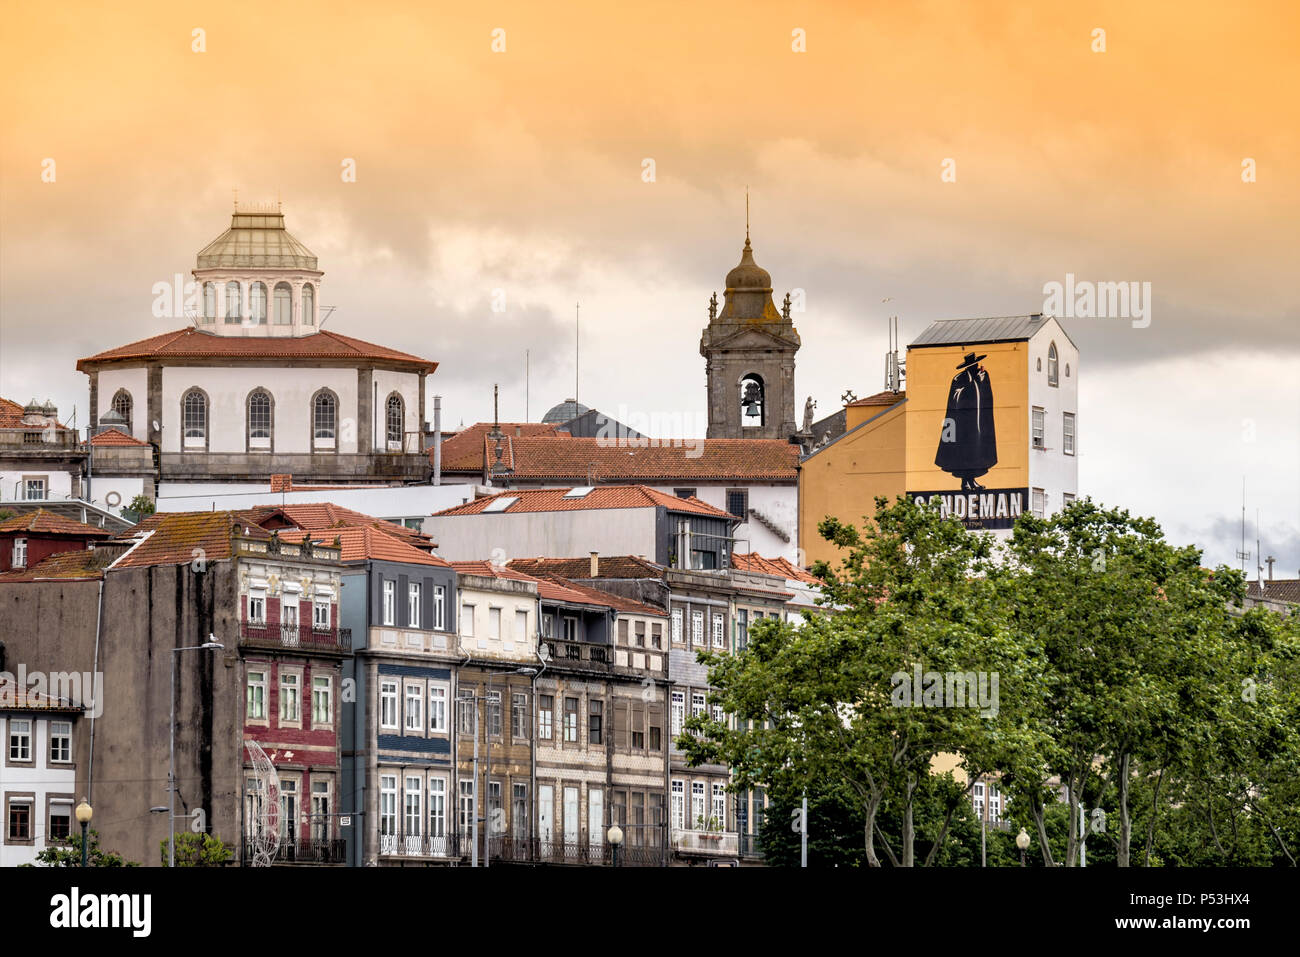 Ribeira, Chiesa del Terzo Ordine di San Francesco, Sandemann pittura murale, edifici tradizionali, Porto, Portogallo Foto Stock